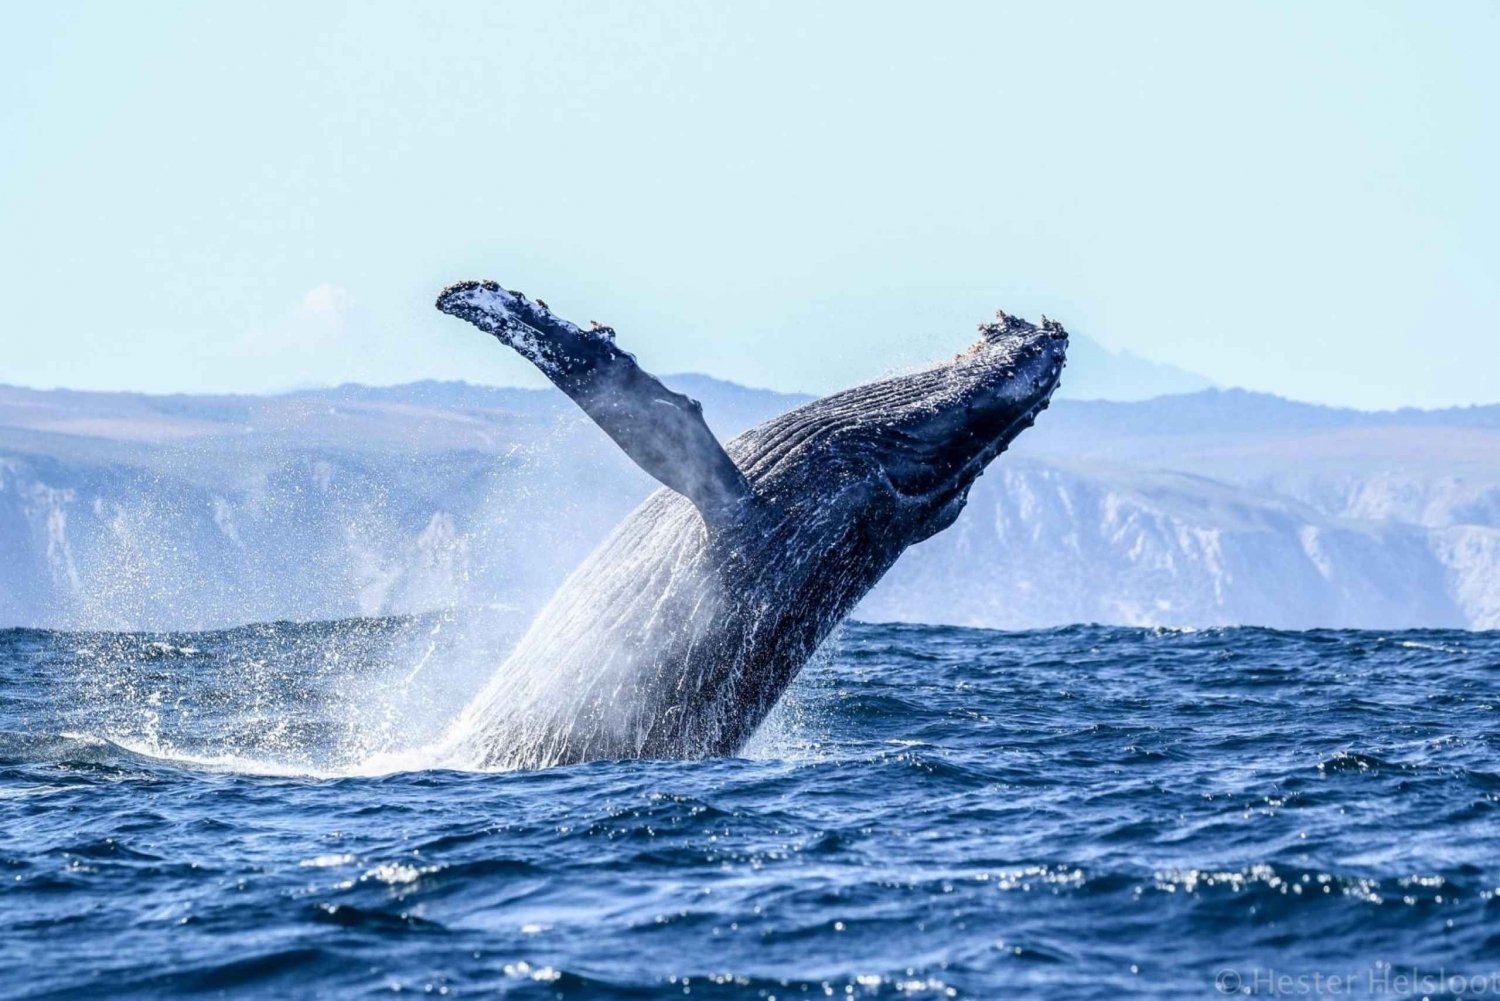 Knysna: incontro ravvicinato con avvistamento di balene in barca